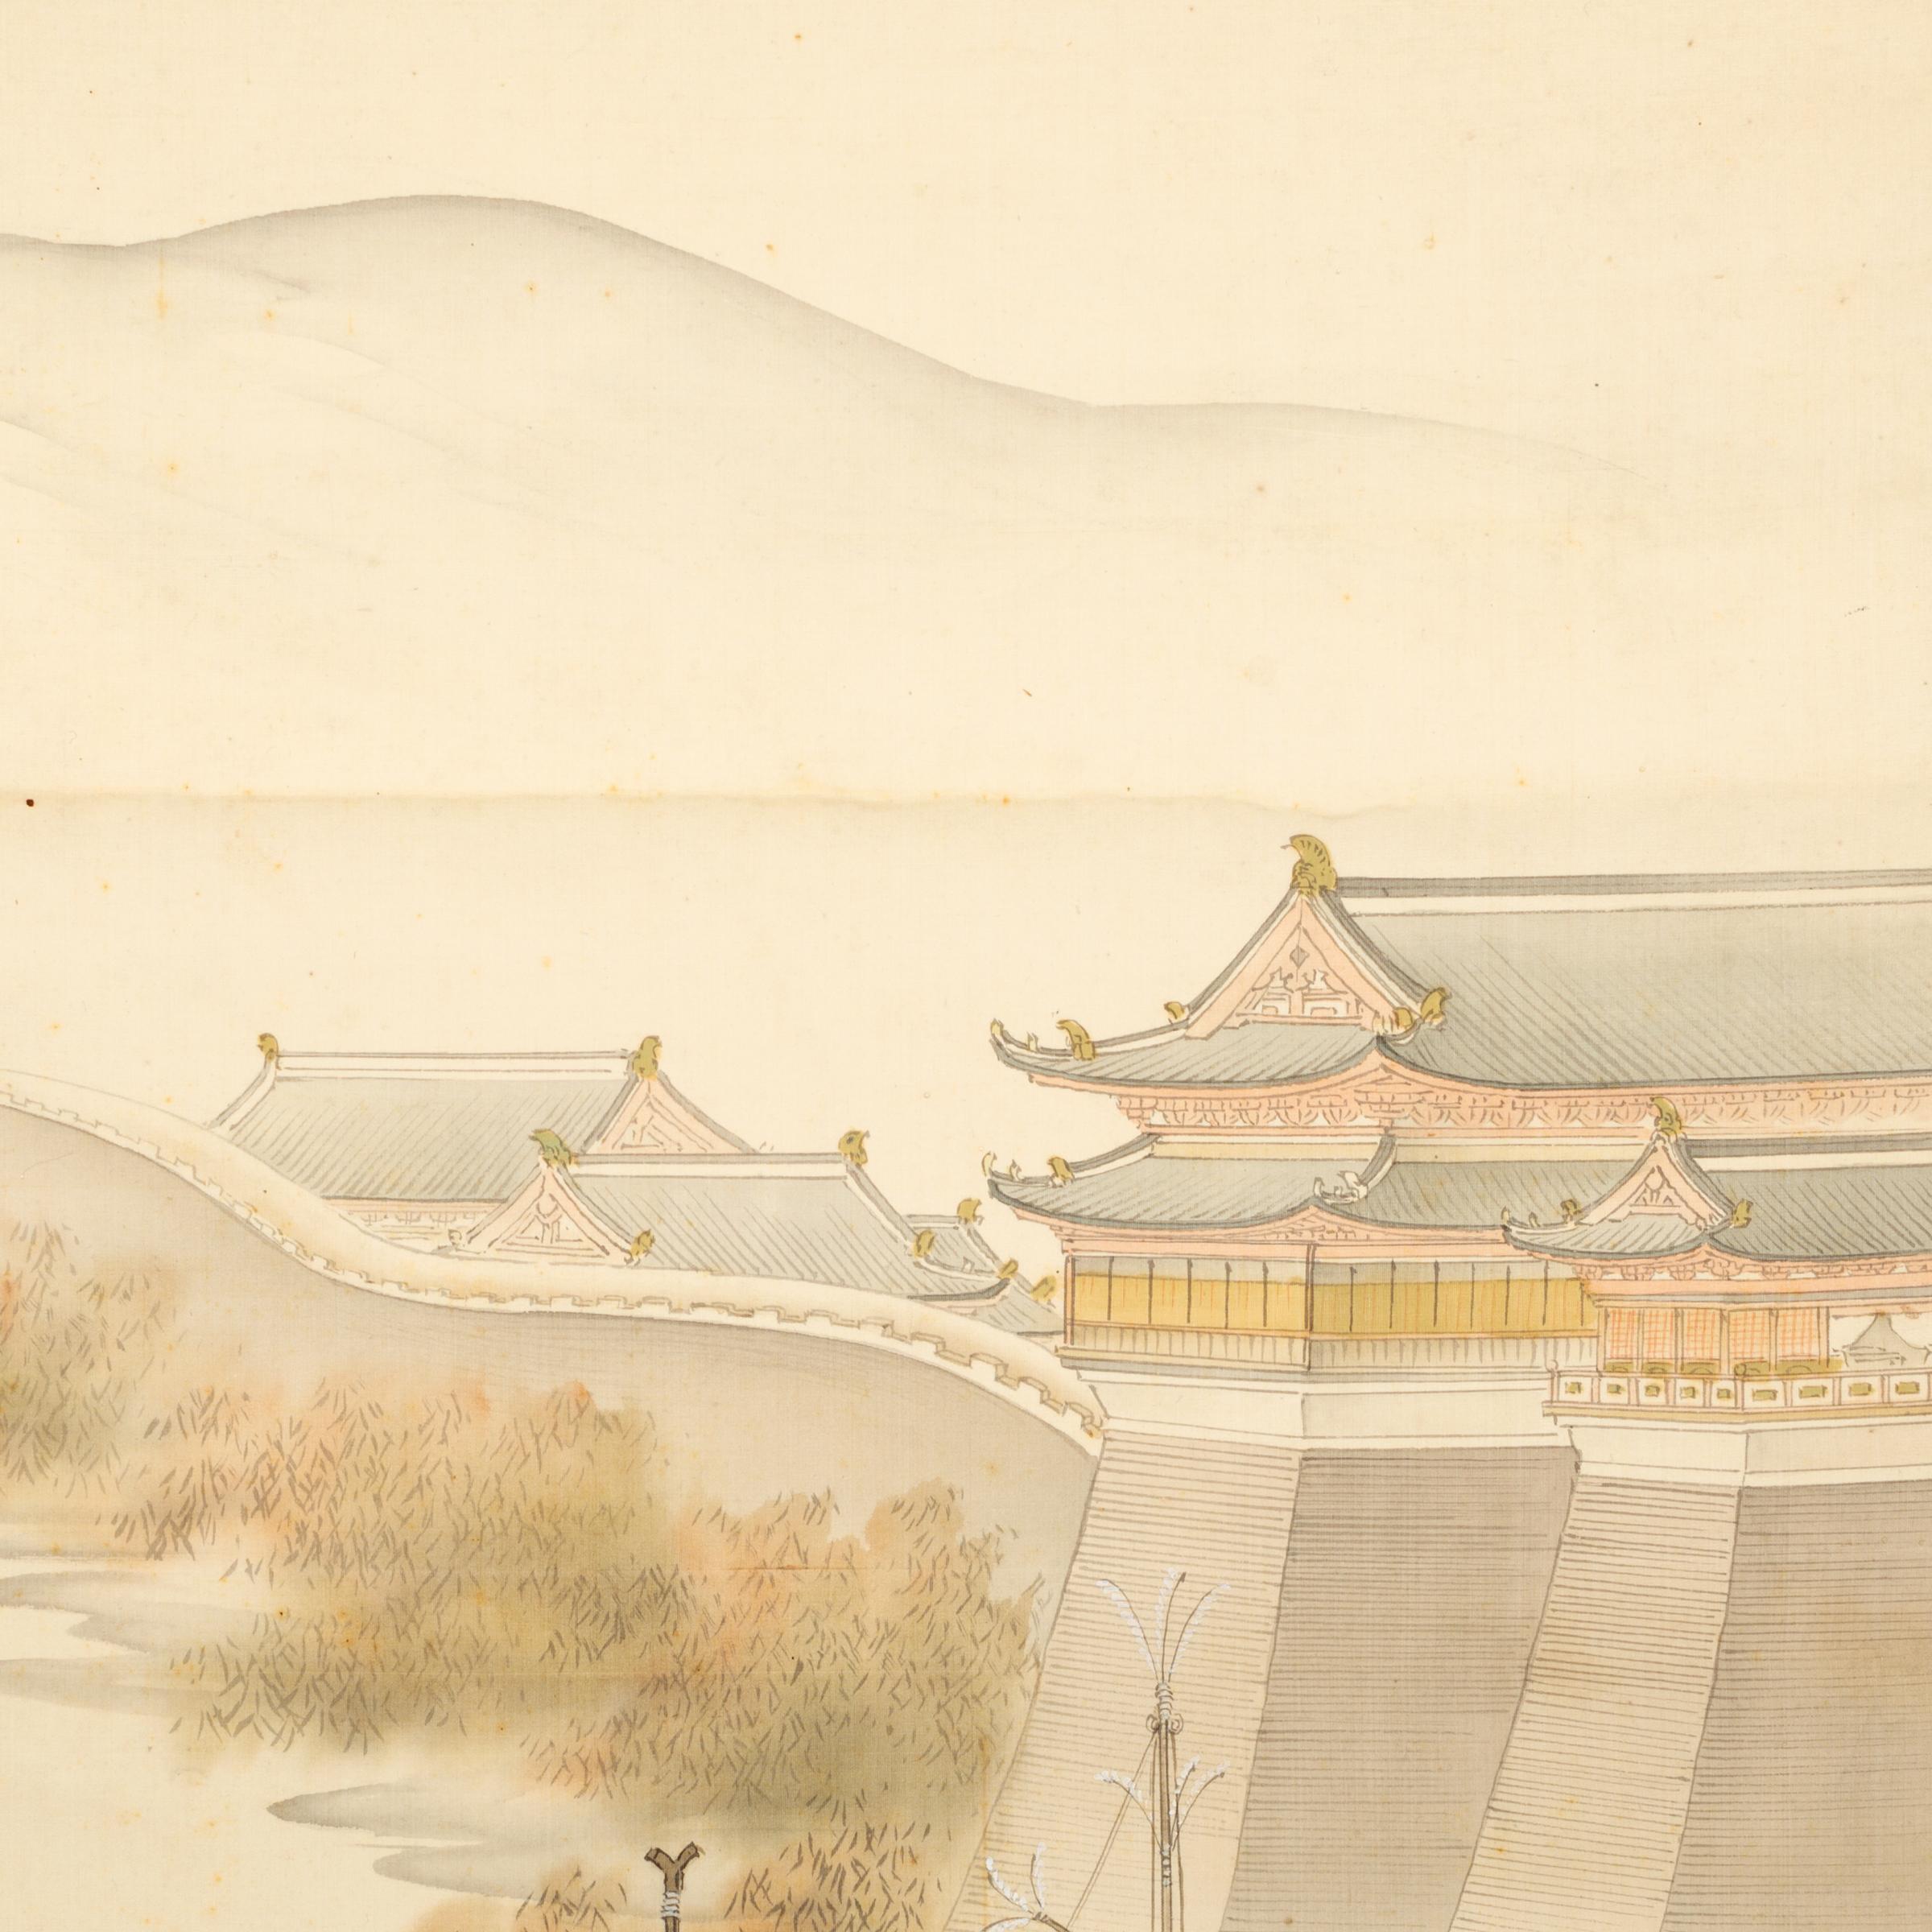 Bien que la peinture occidentale ait été initialement adoptée pendant la période Meiji (1868-1912), les artistes ont fait renaître les styles de peinture traditionnels en cherchant à créer un style japonais moderne ayant des racines dans le passé.